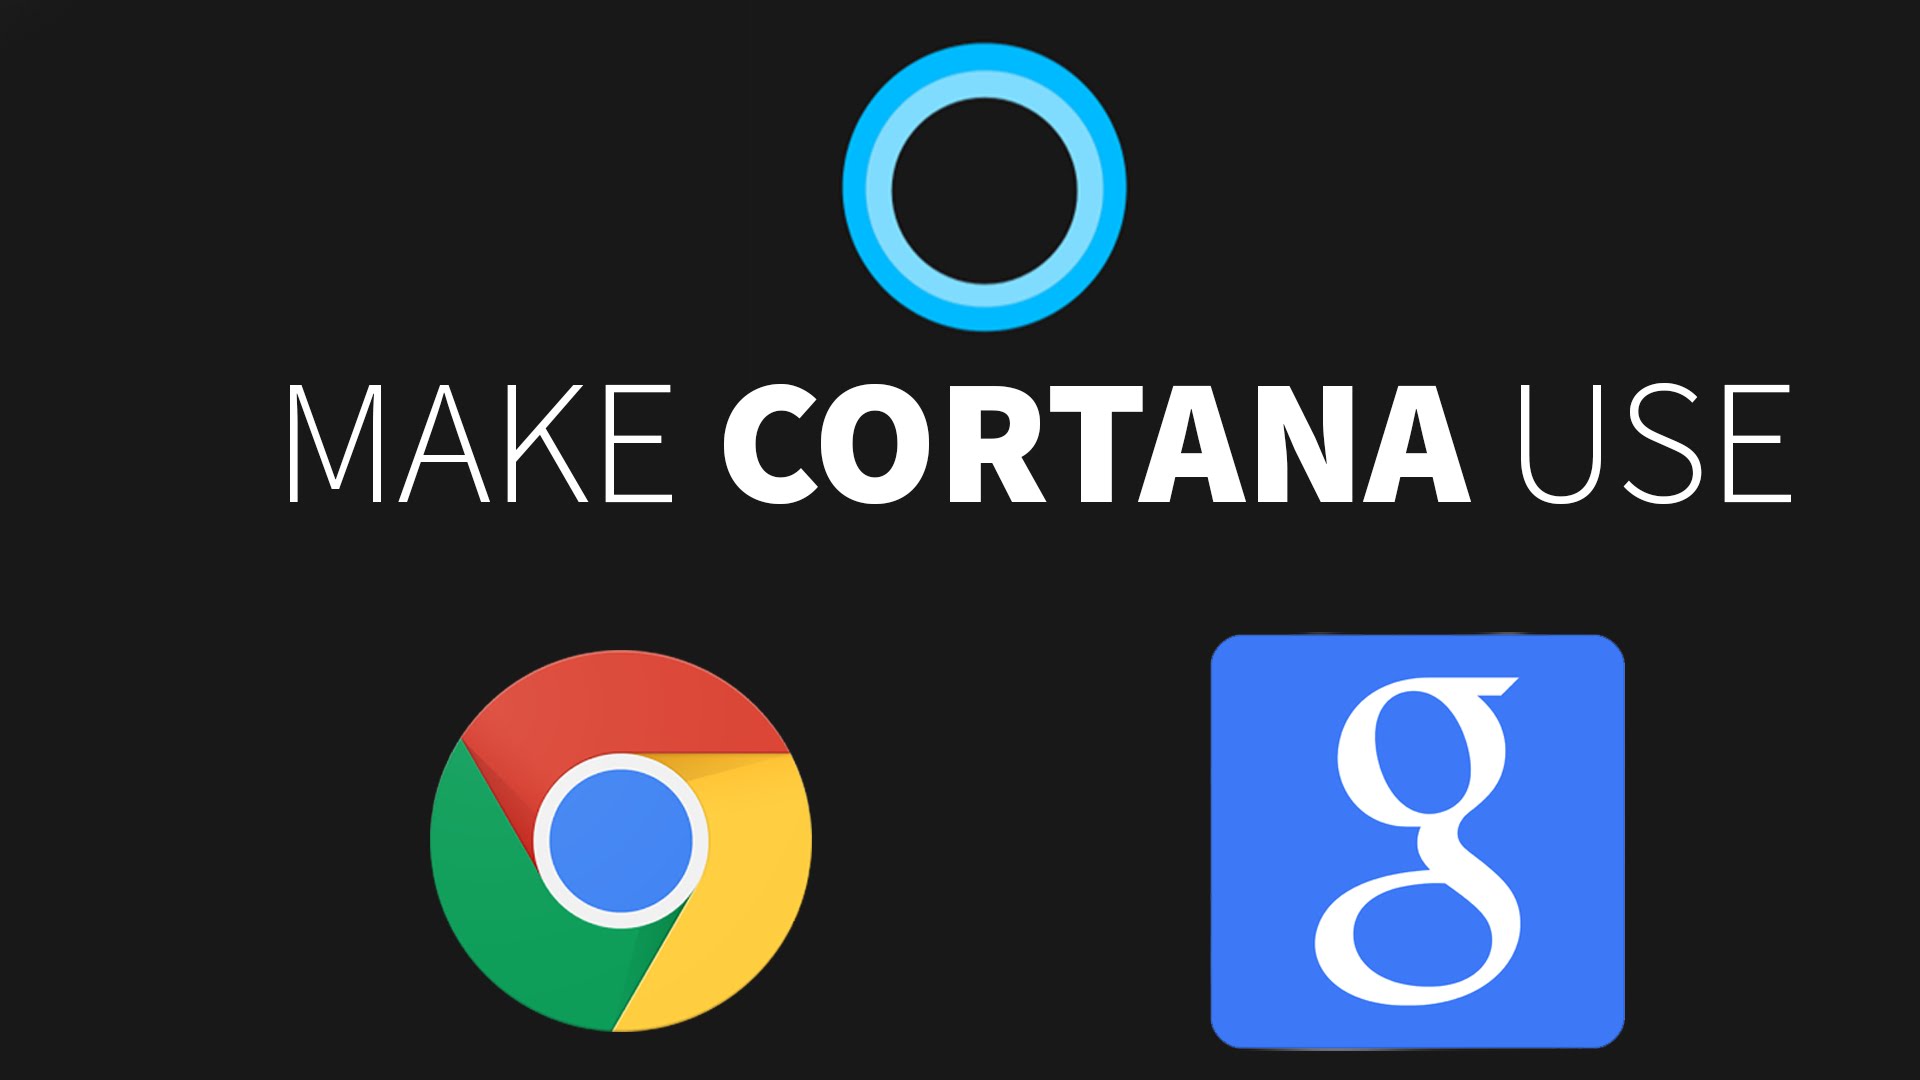 Hướng dẫn cách buộc Cortana sử dụng Google trên Chrome hoặc Firefox